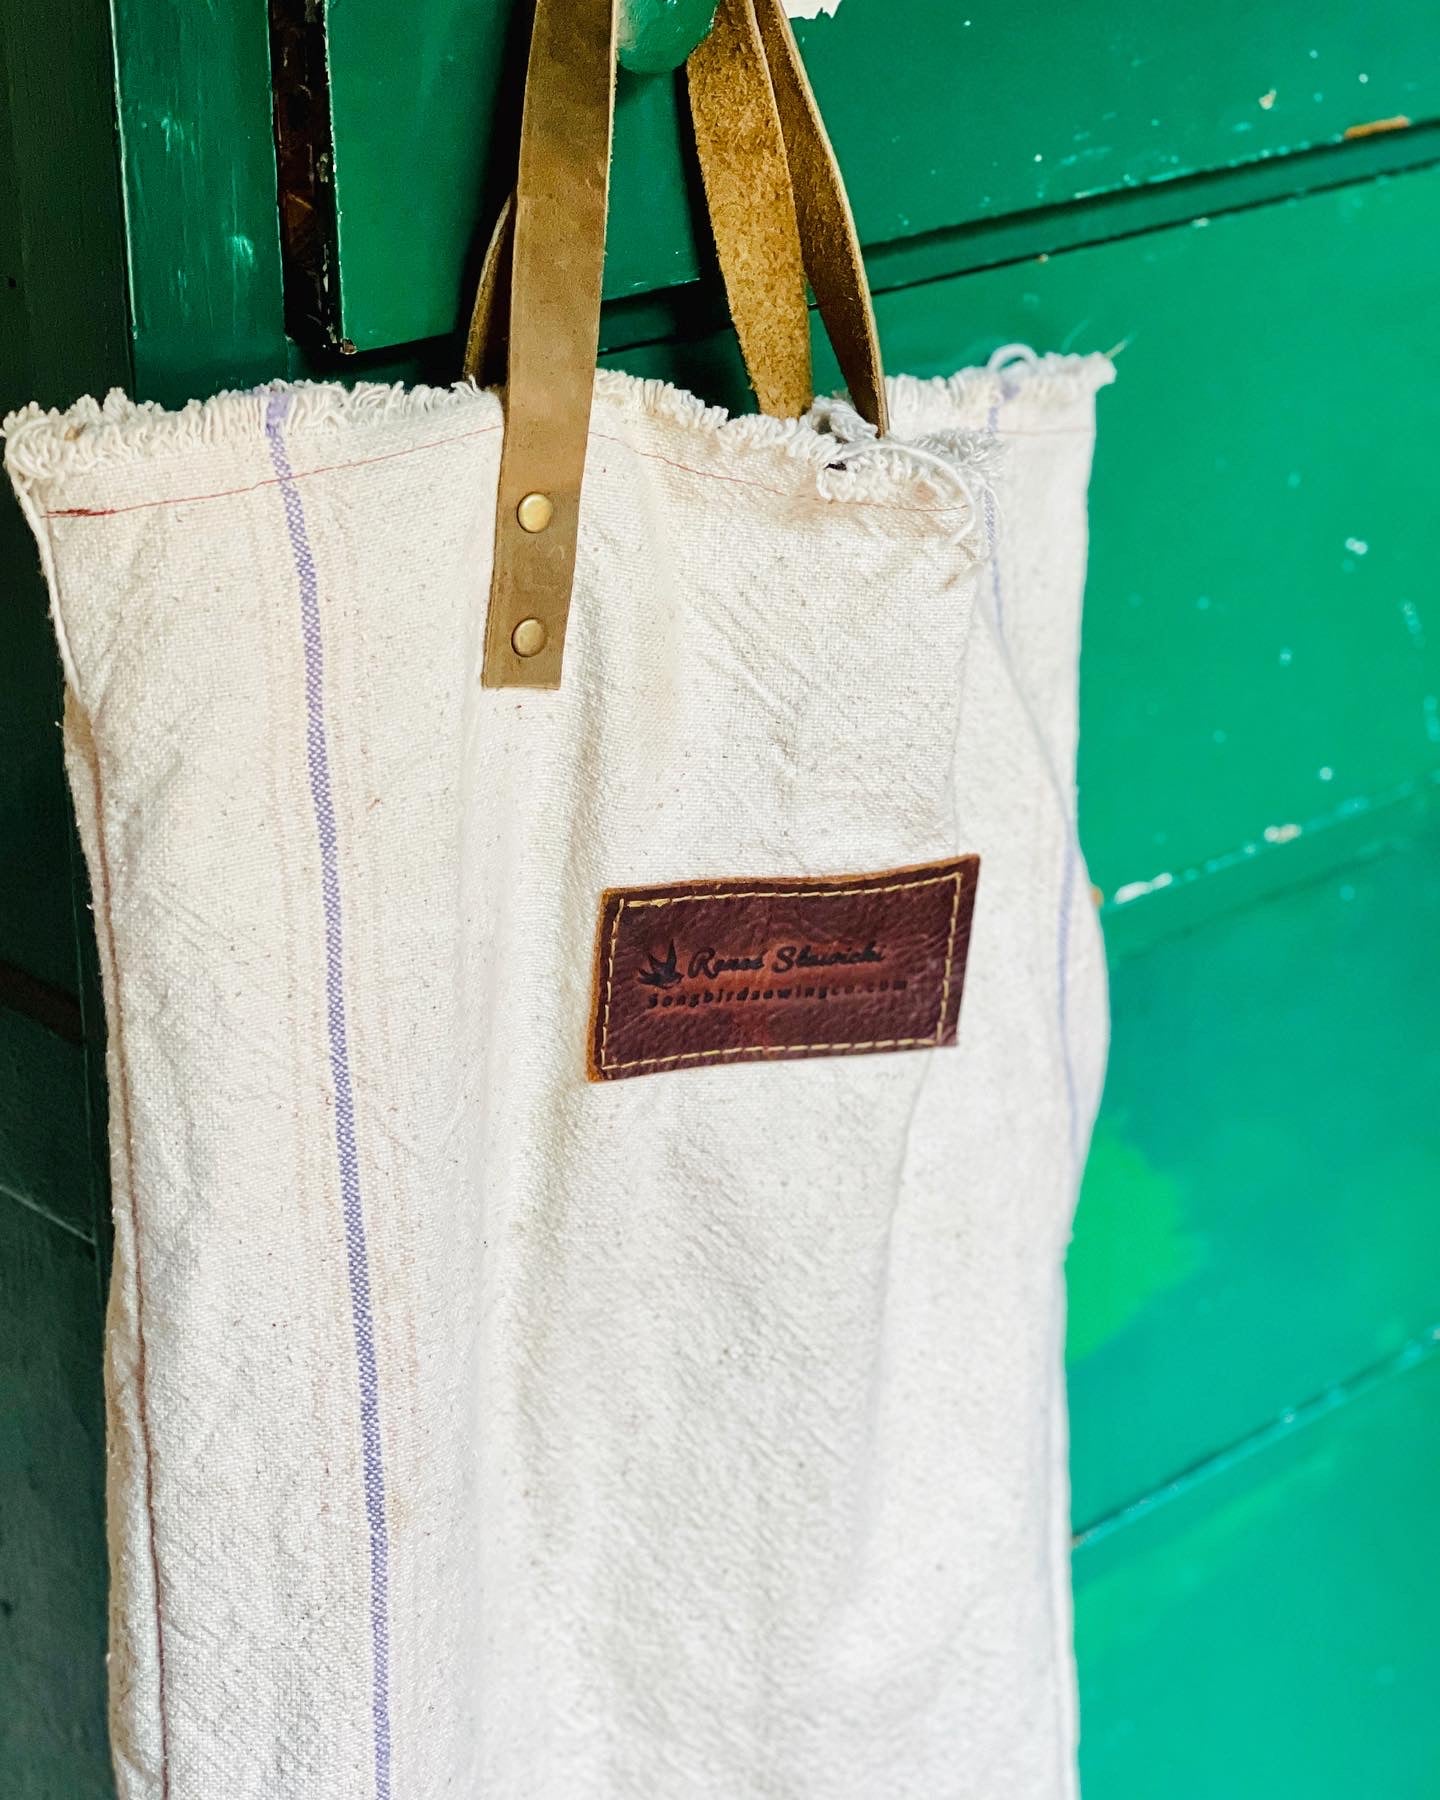 Vintage Grain Sack Market bag